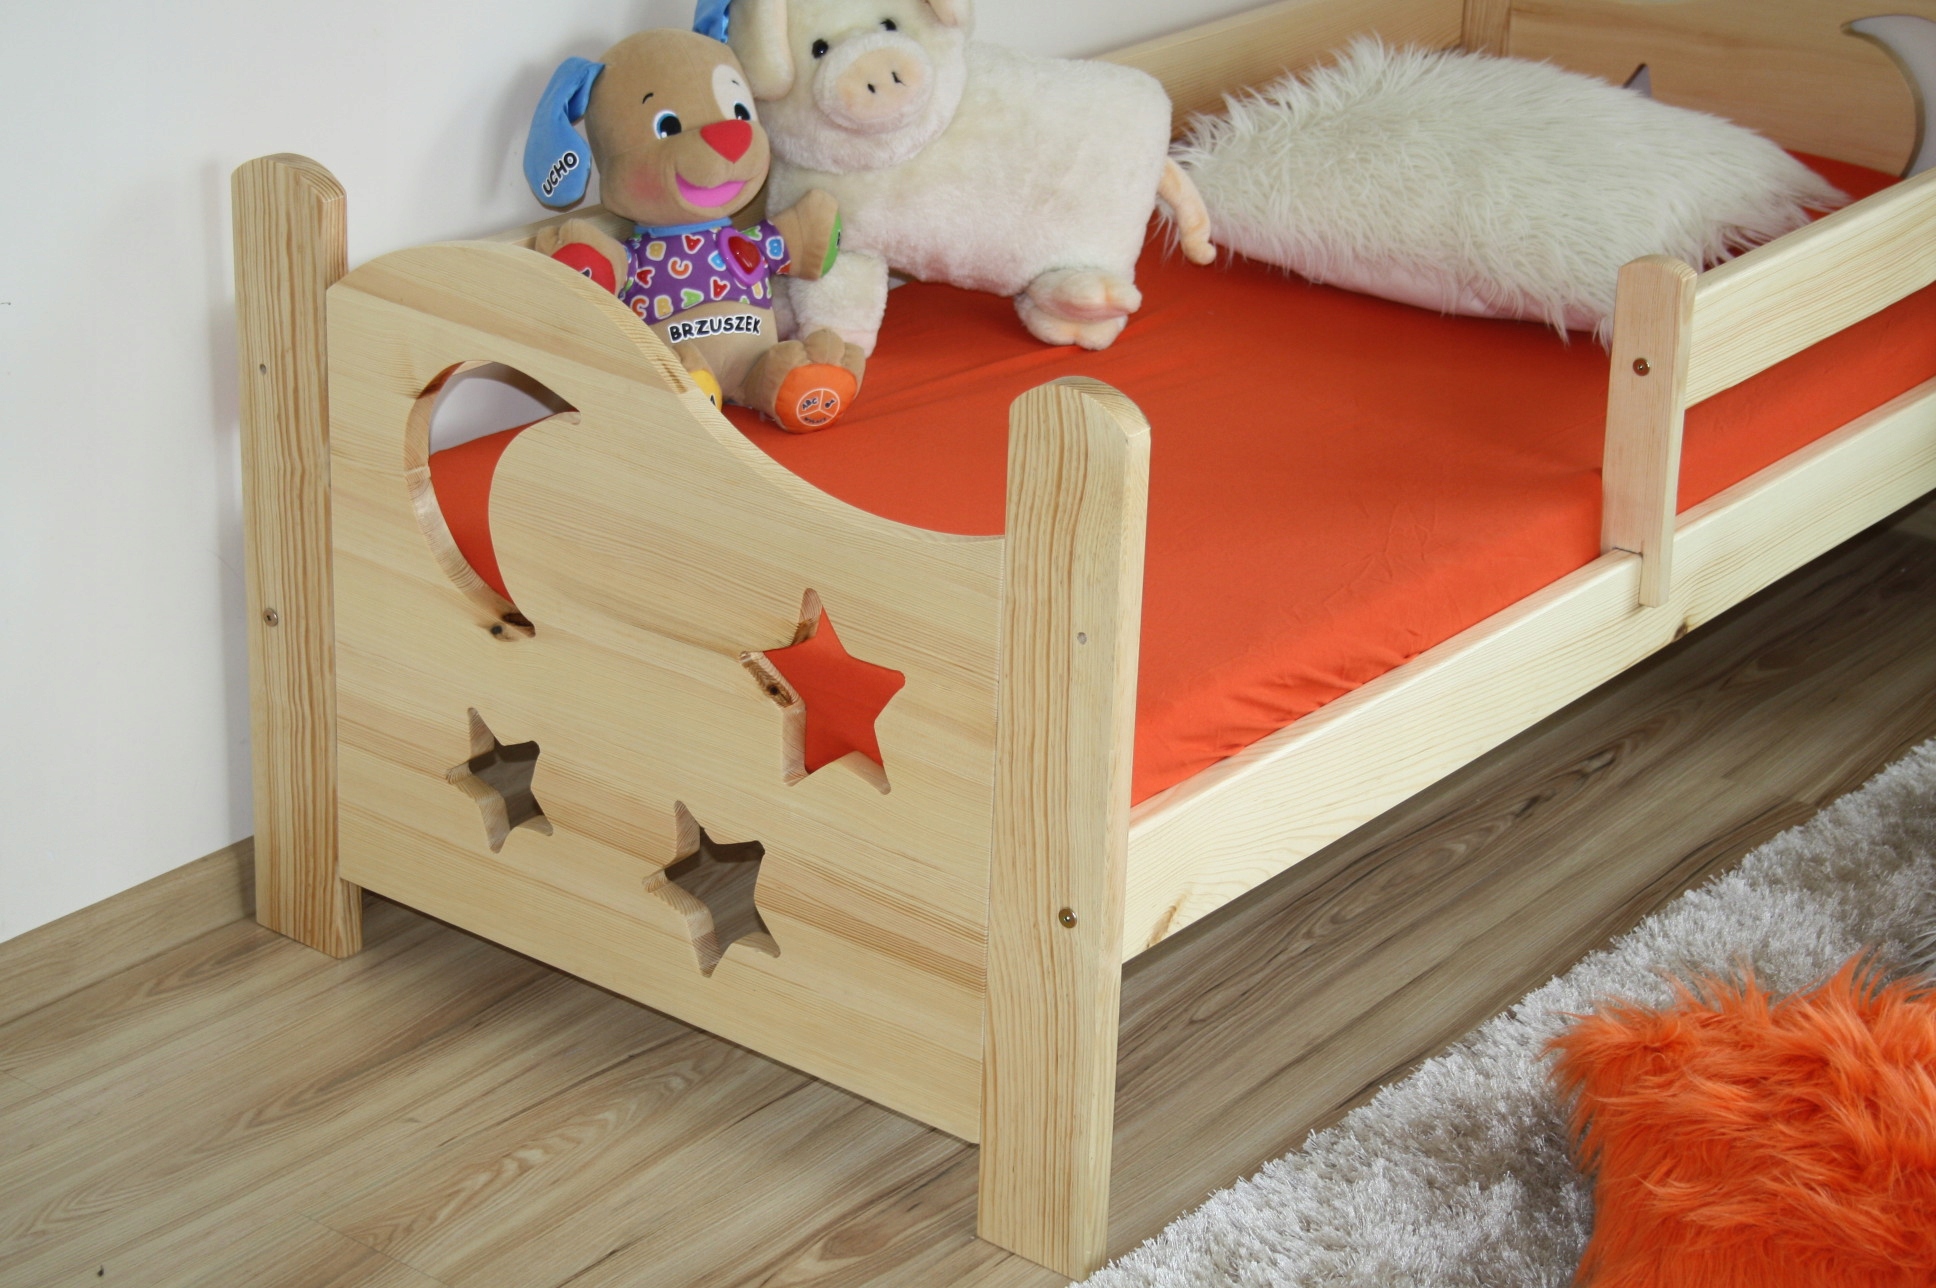 Сделать детскую кроватку своими руками из дерева: Кровать-домик для ребенка: как сделать кровать-домик своими руками для мальчика или девочки